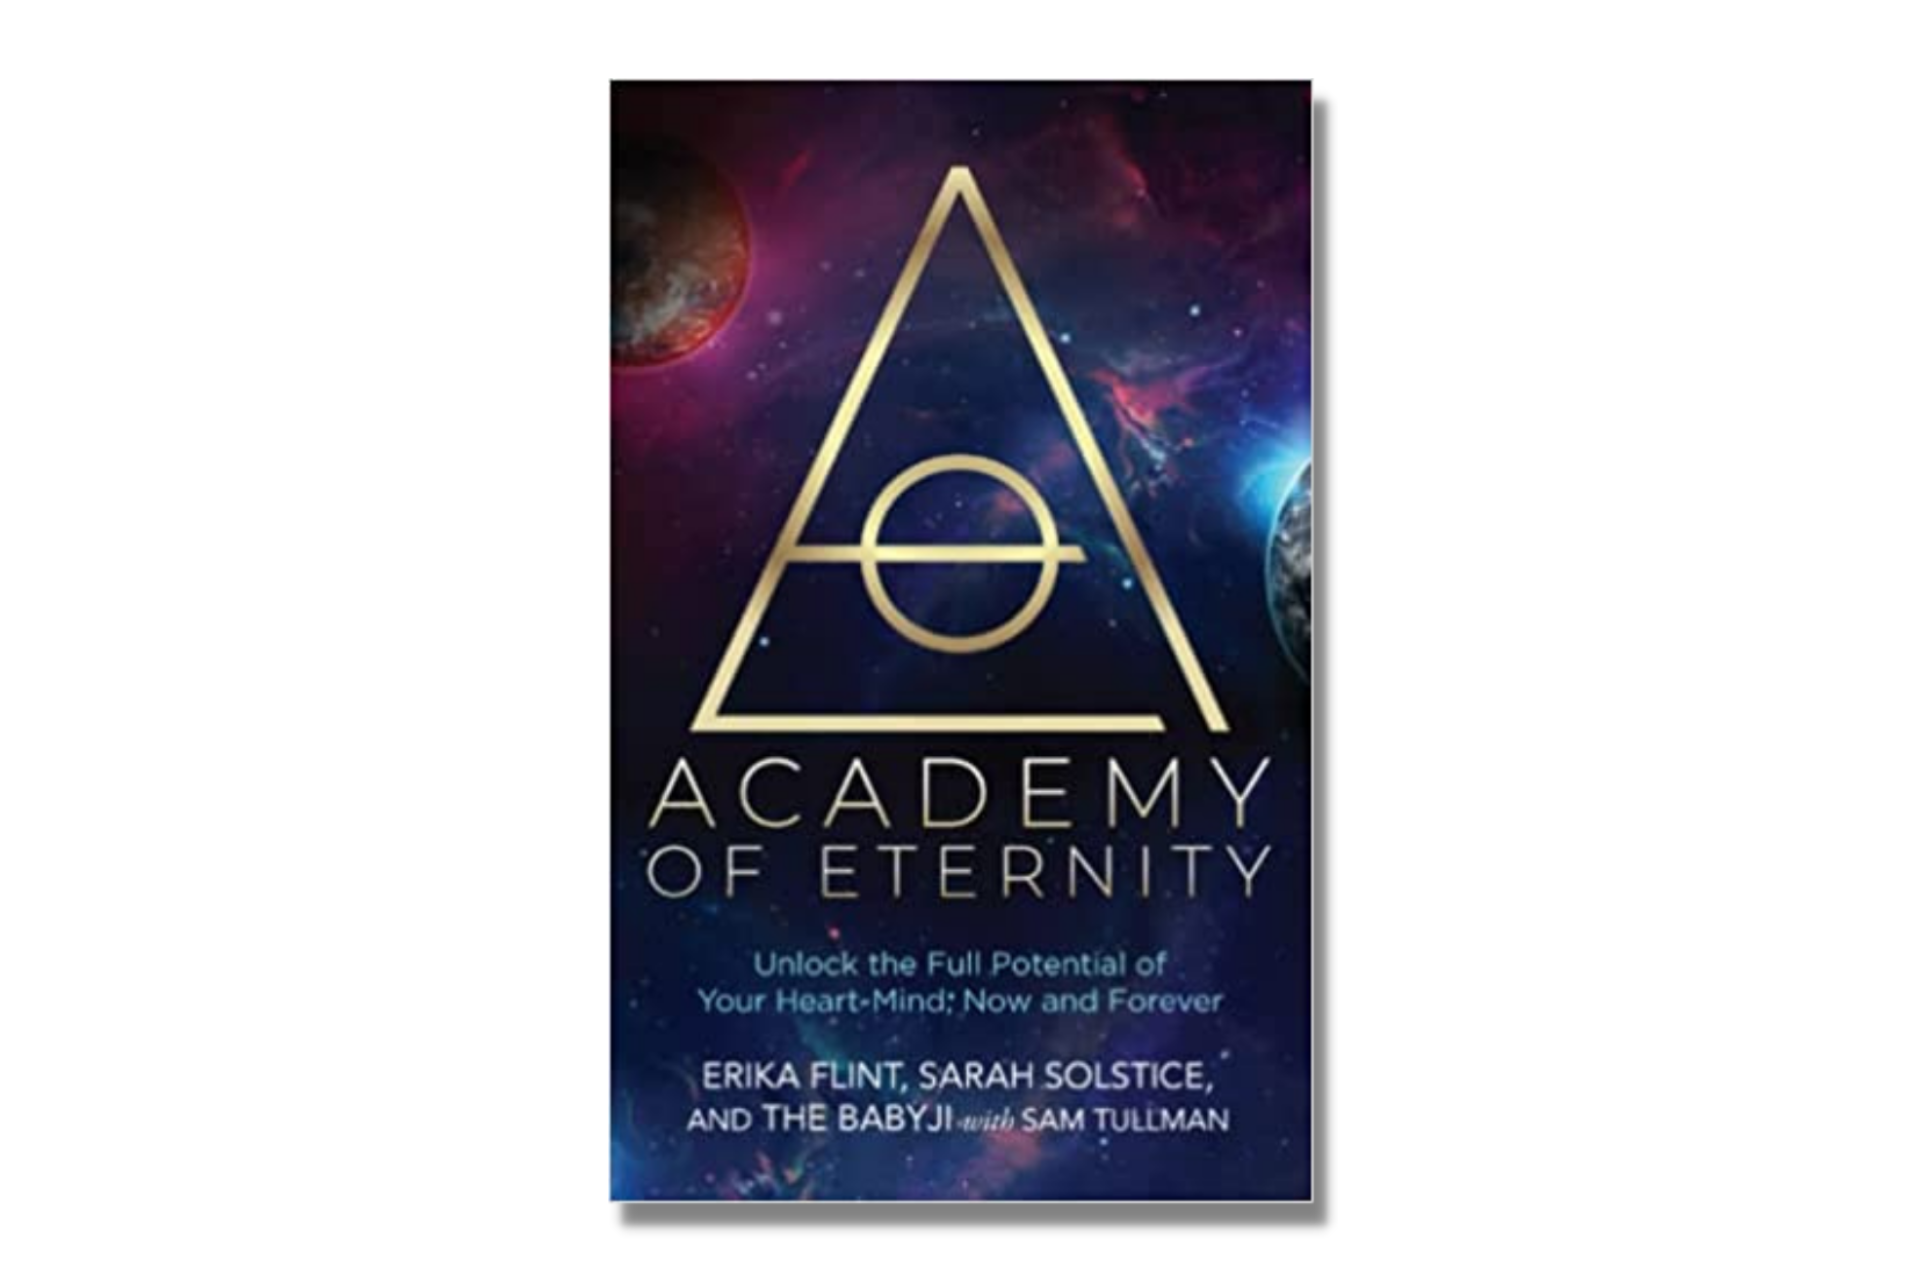 Academy of Eternity by Erika Flint